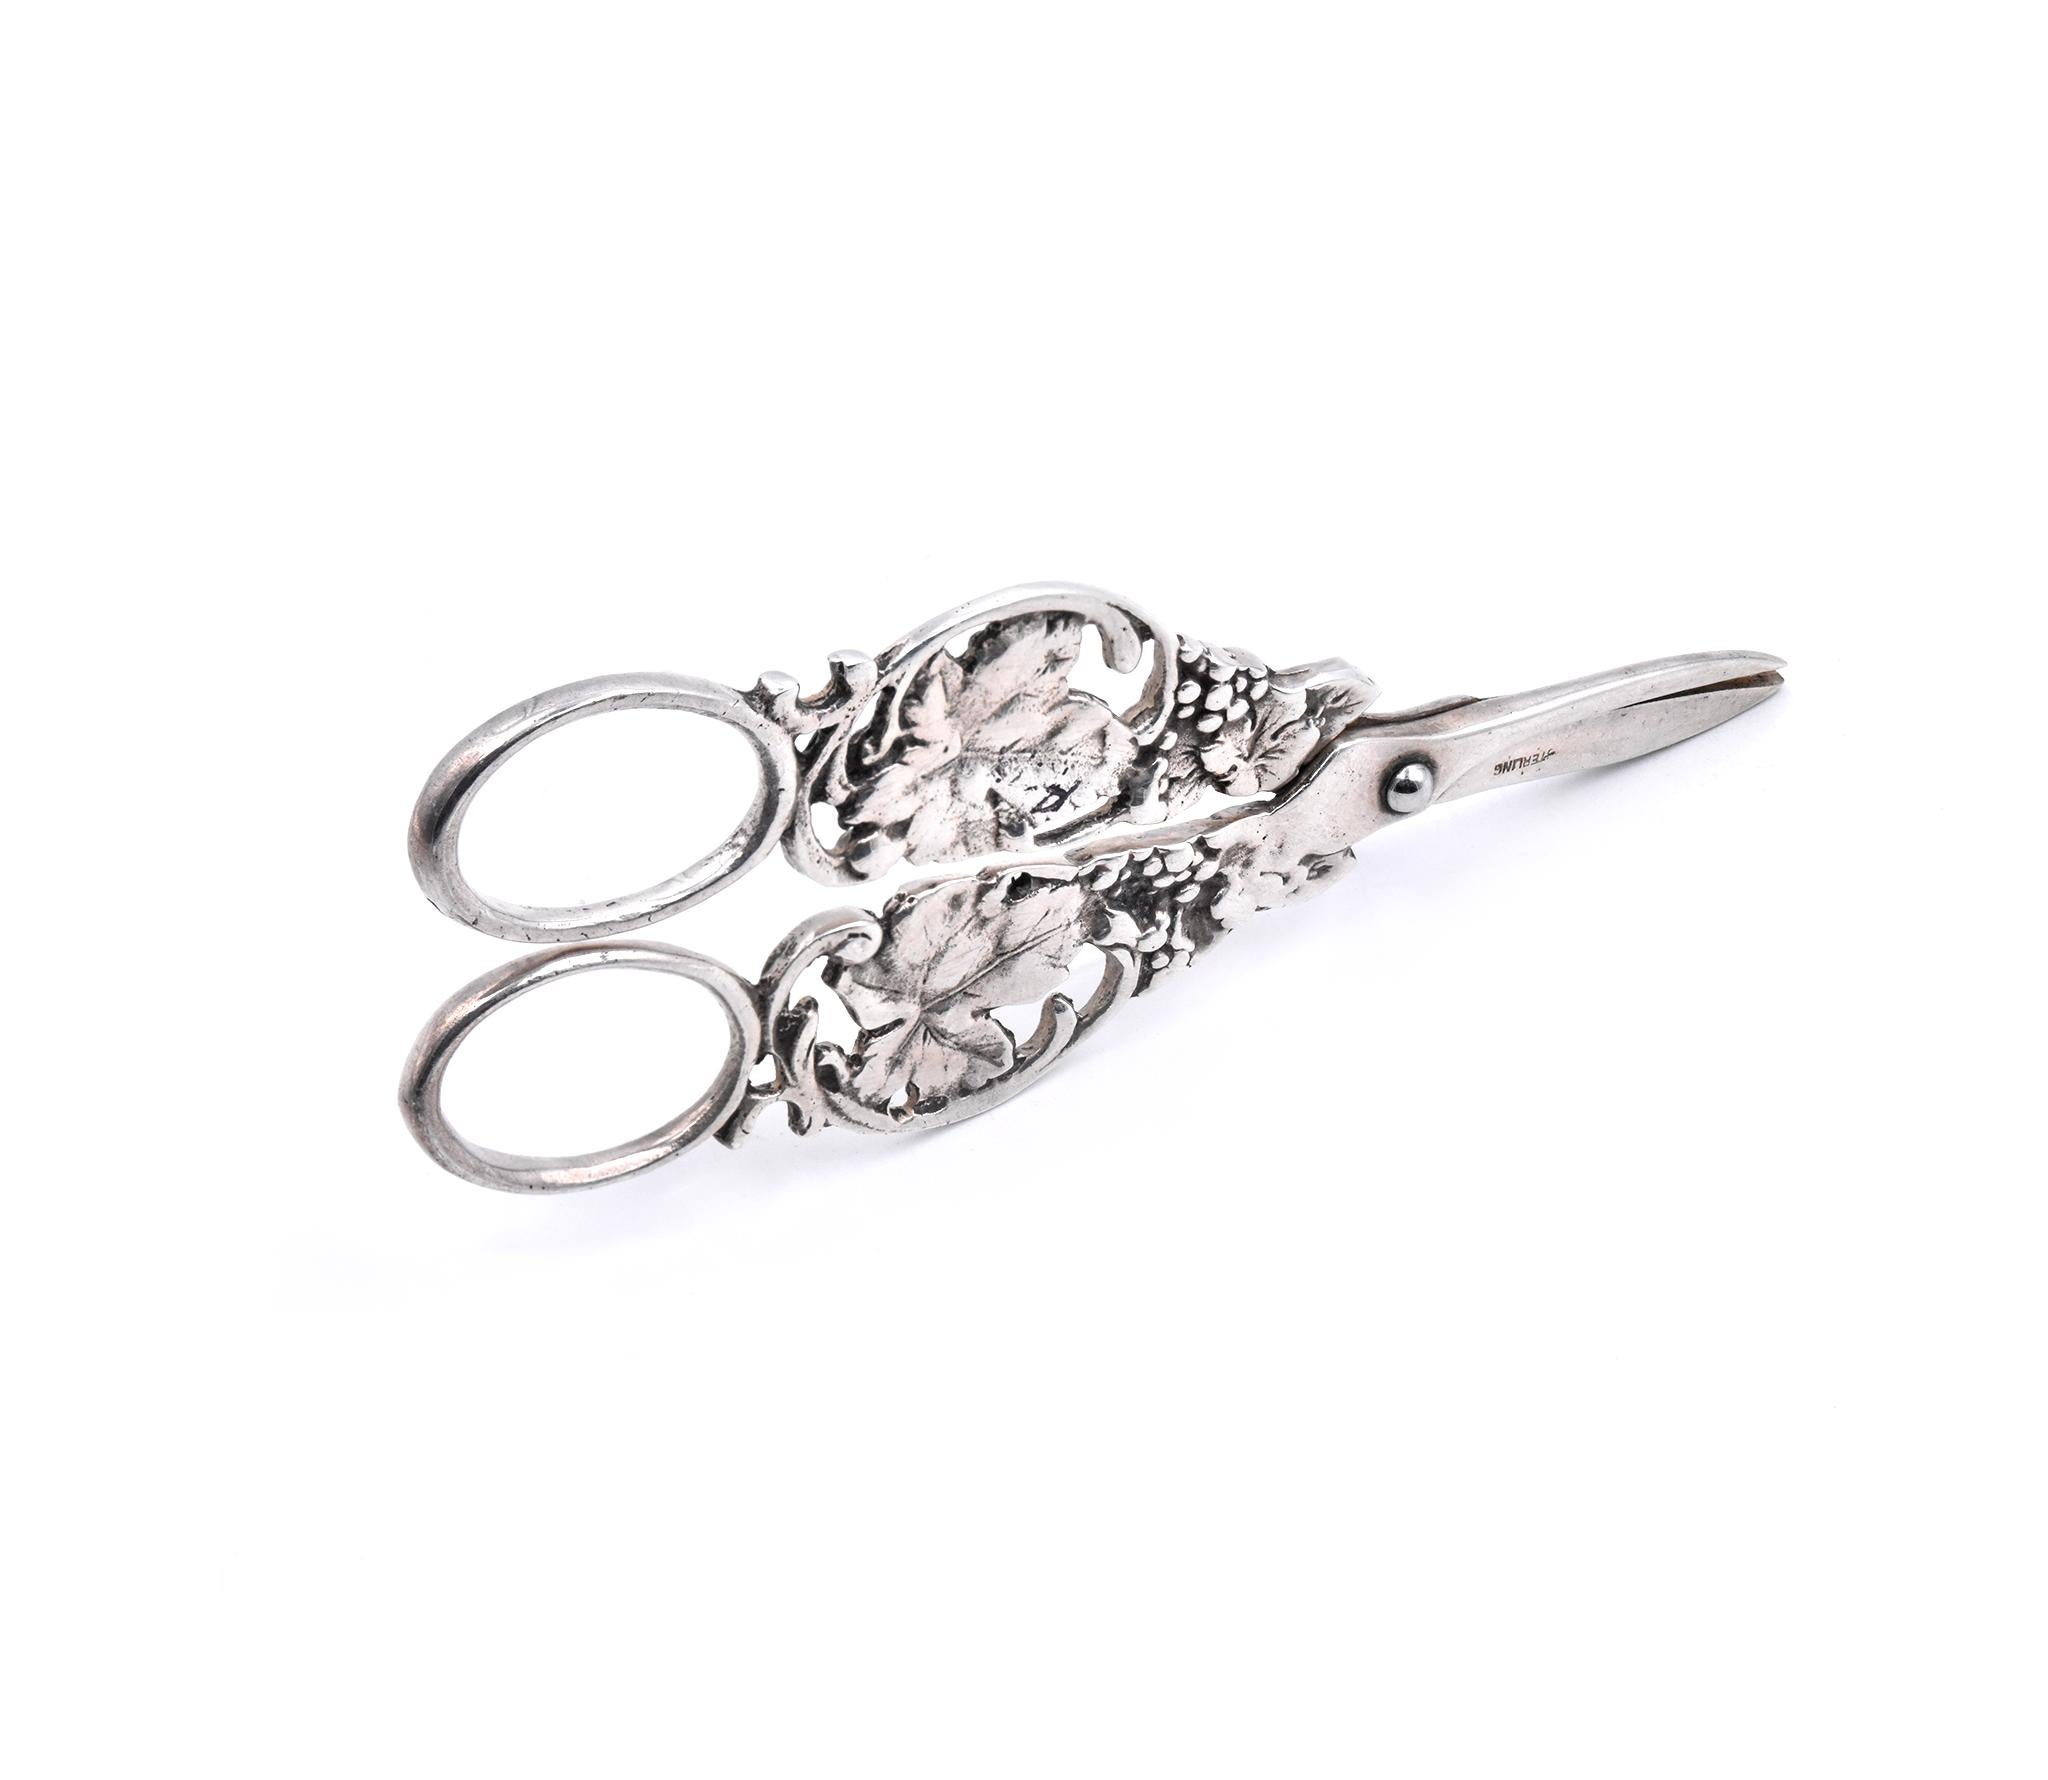 Designer: custom
Material: Sterling Silver 
Weight: 58.45 grams
Measurement: scissors measure 5” X 1 7/8”  
